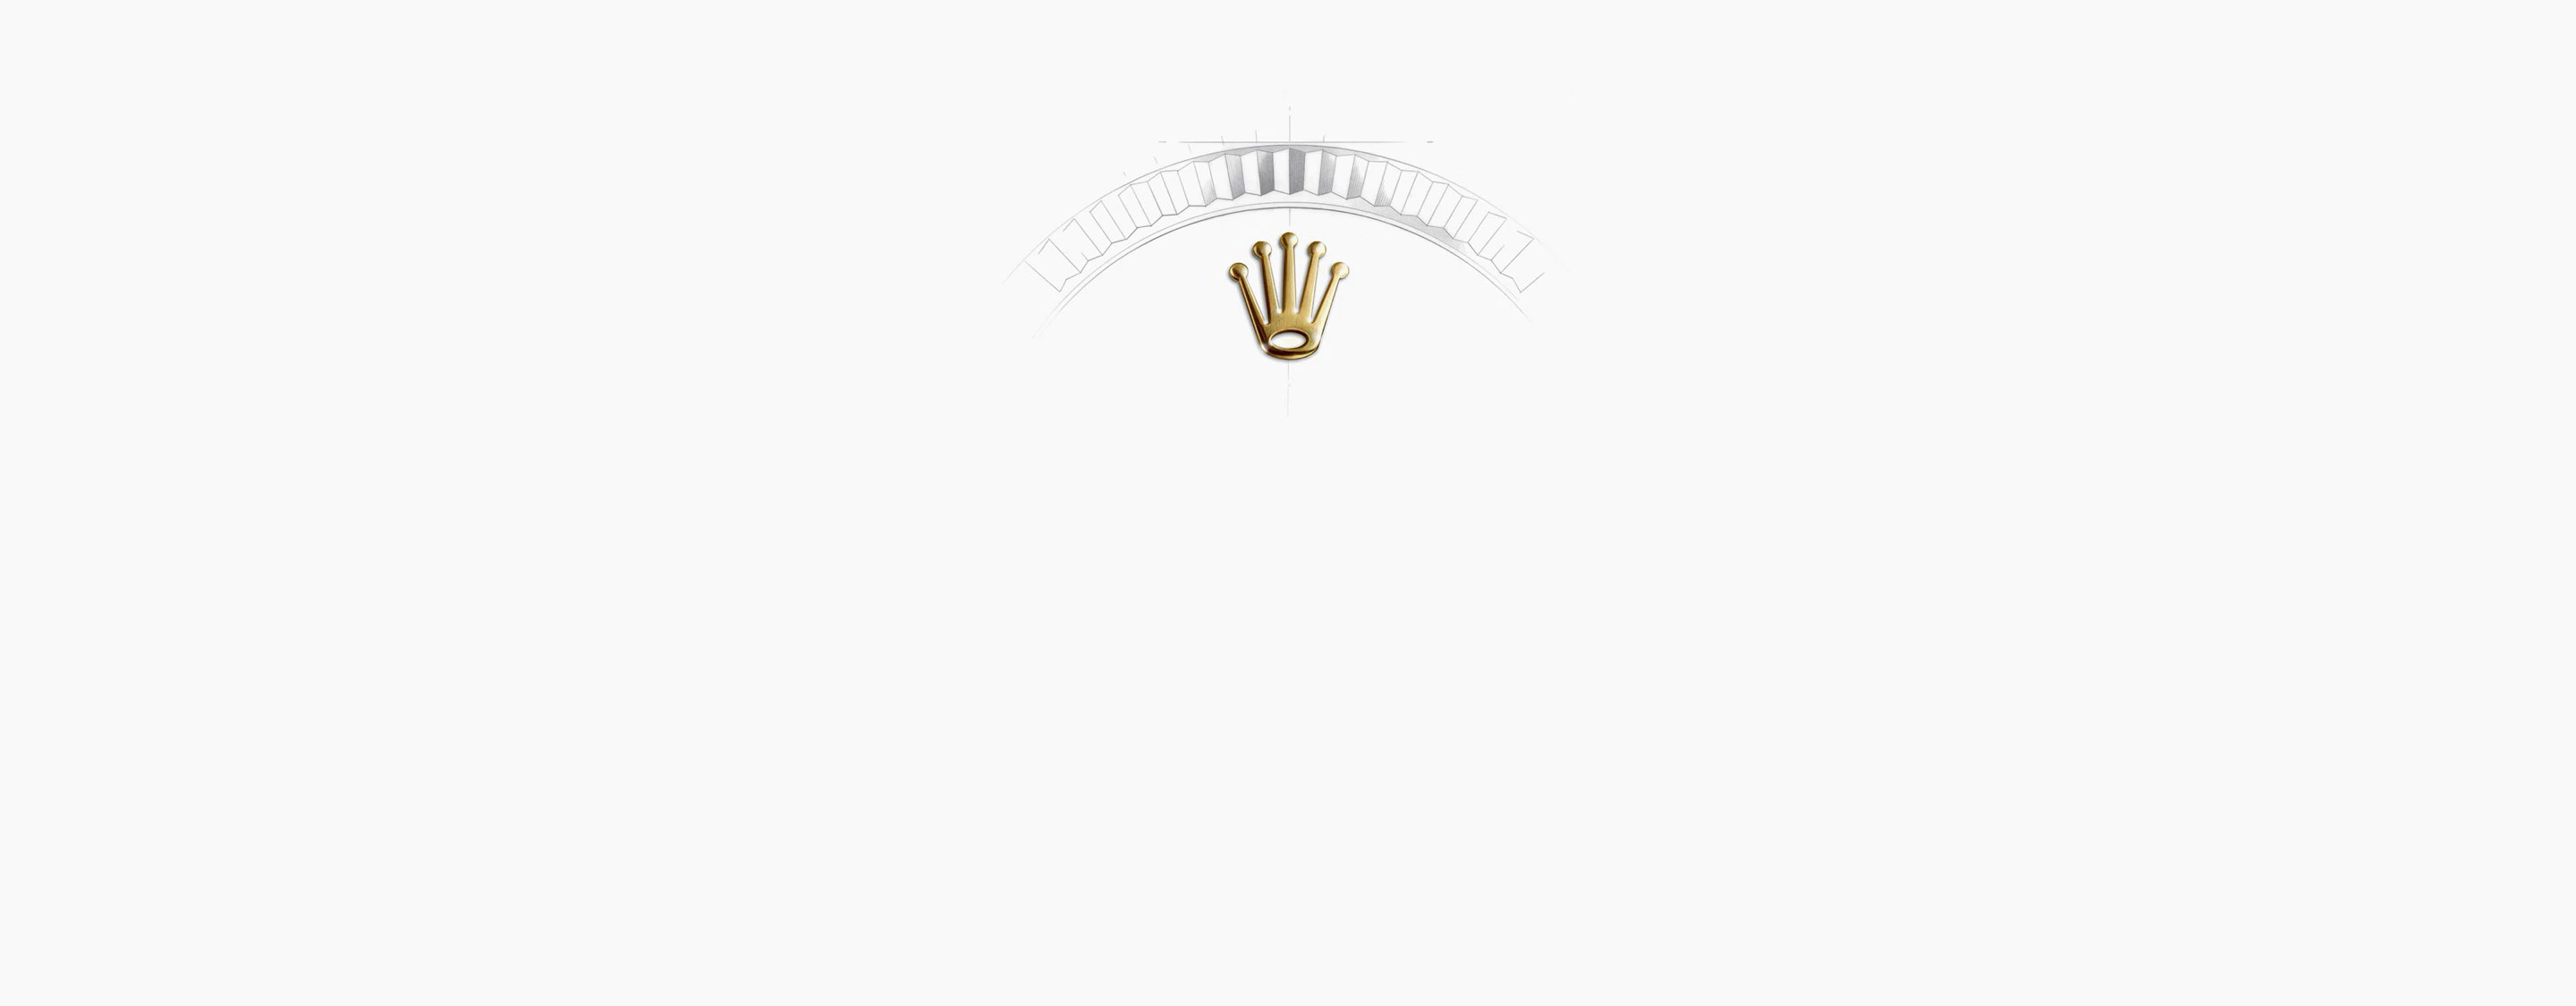 Corona Rolex Datejust 36 en Relojería Alemana